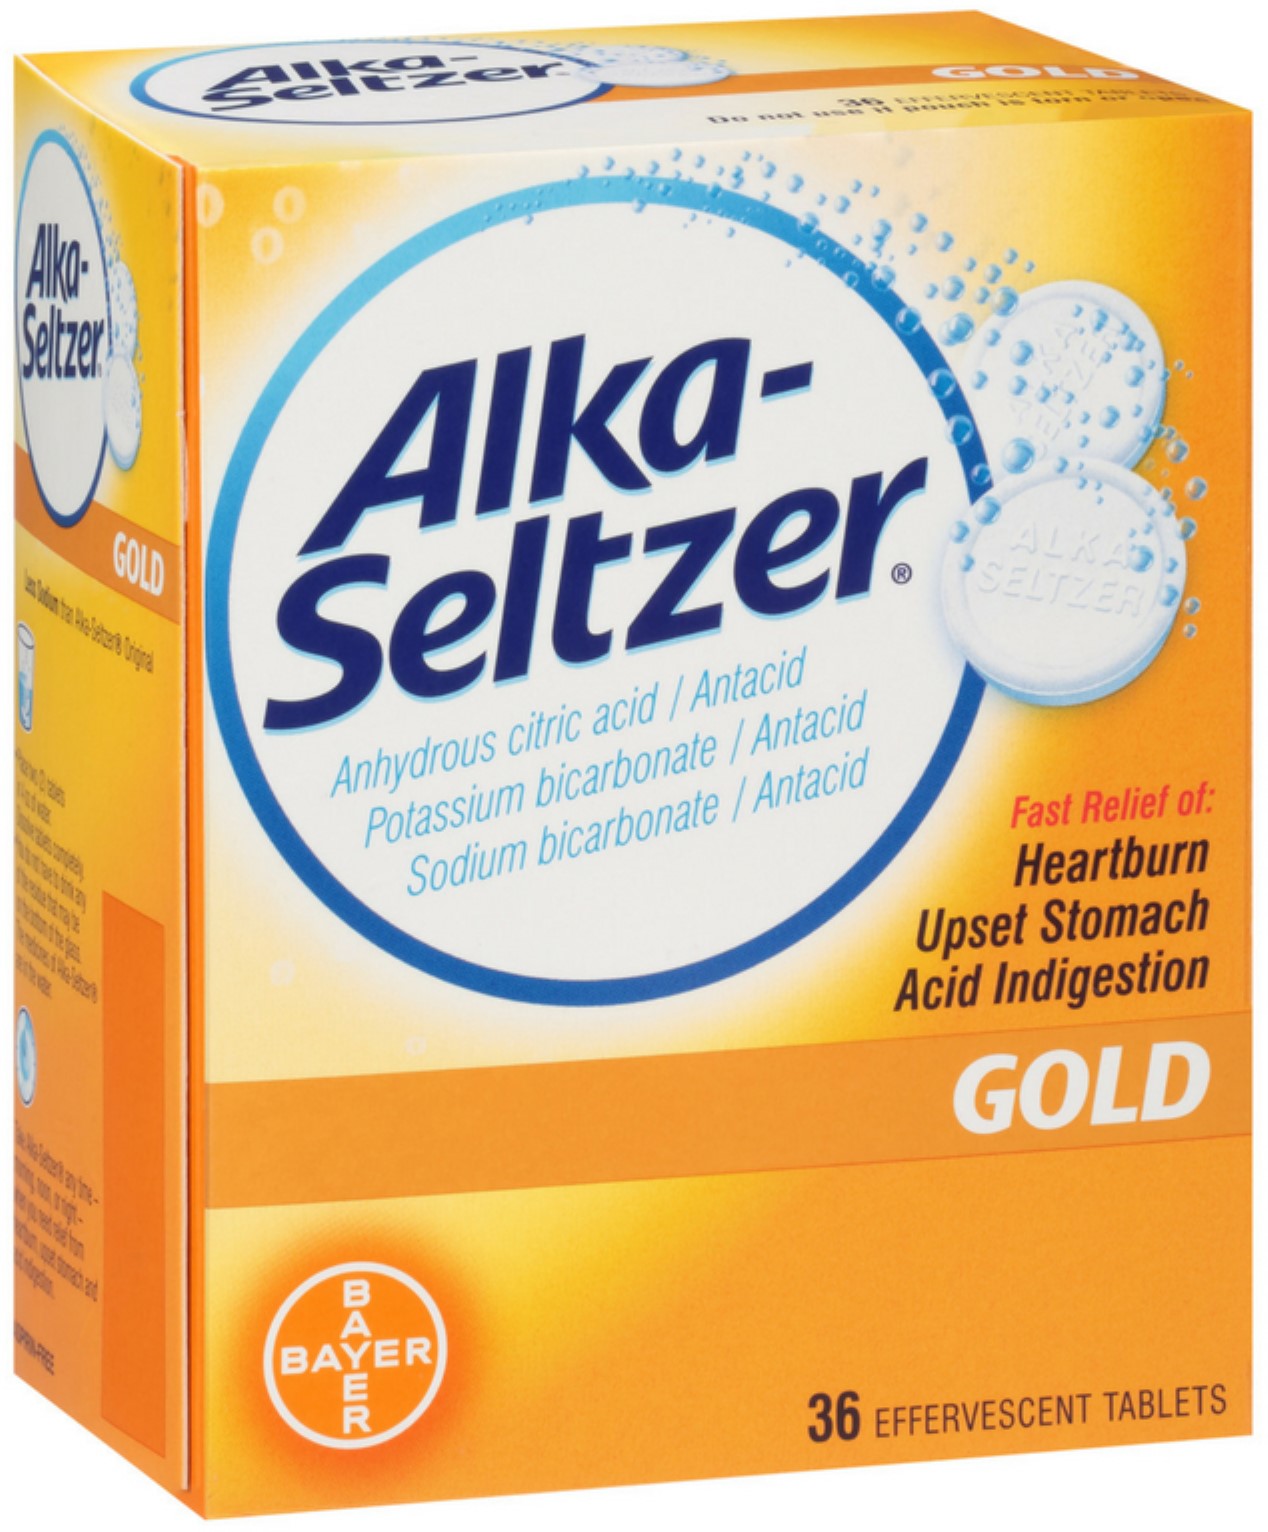 Alka-Seltzer Effervescent Tablets Gold 36 ea (Pack of 4) - image 1 of 7